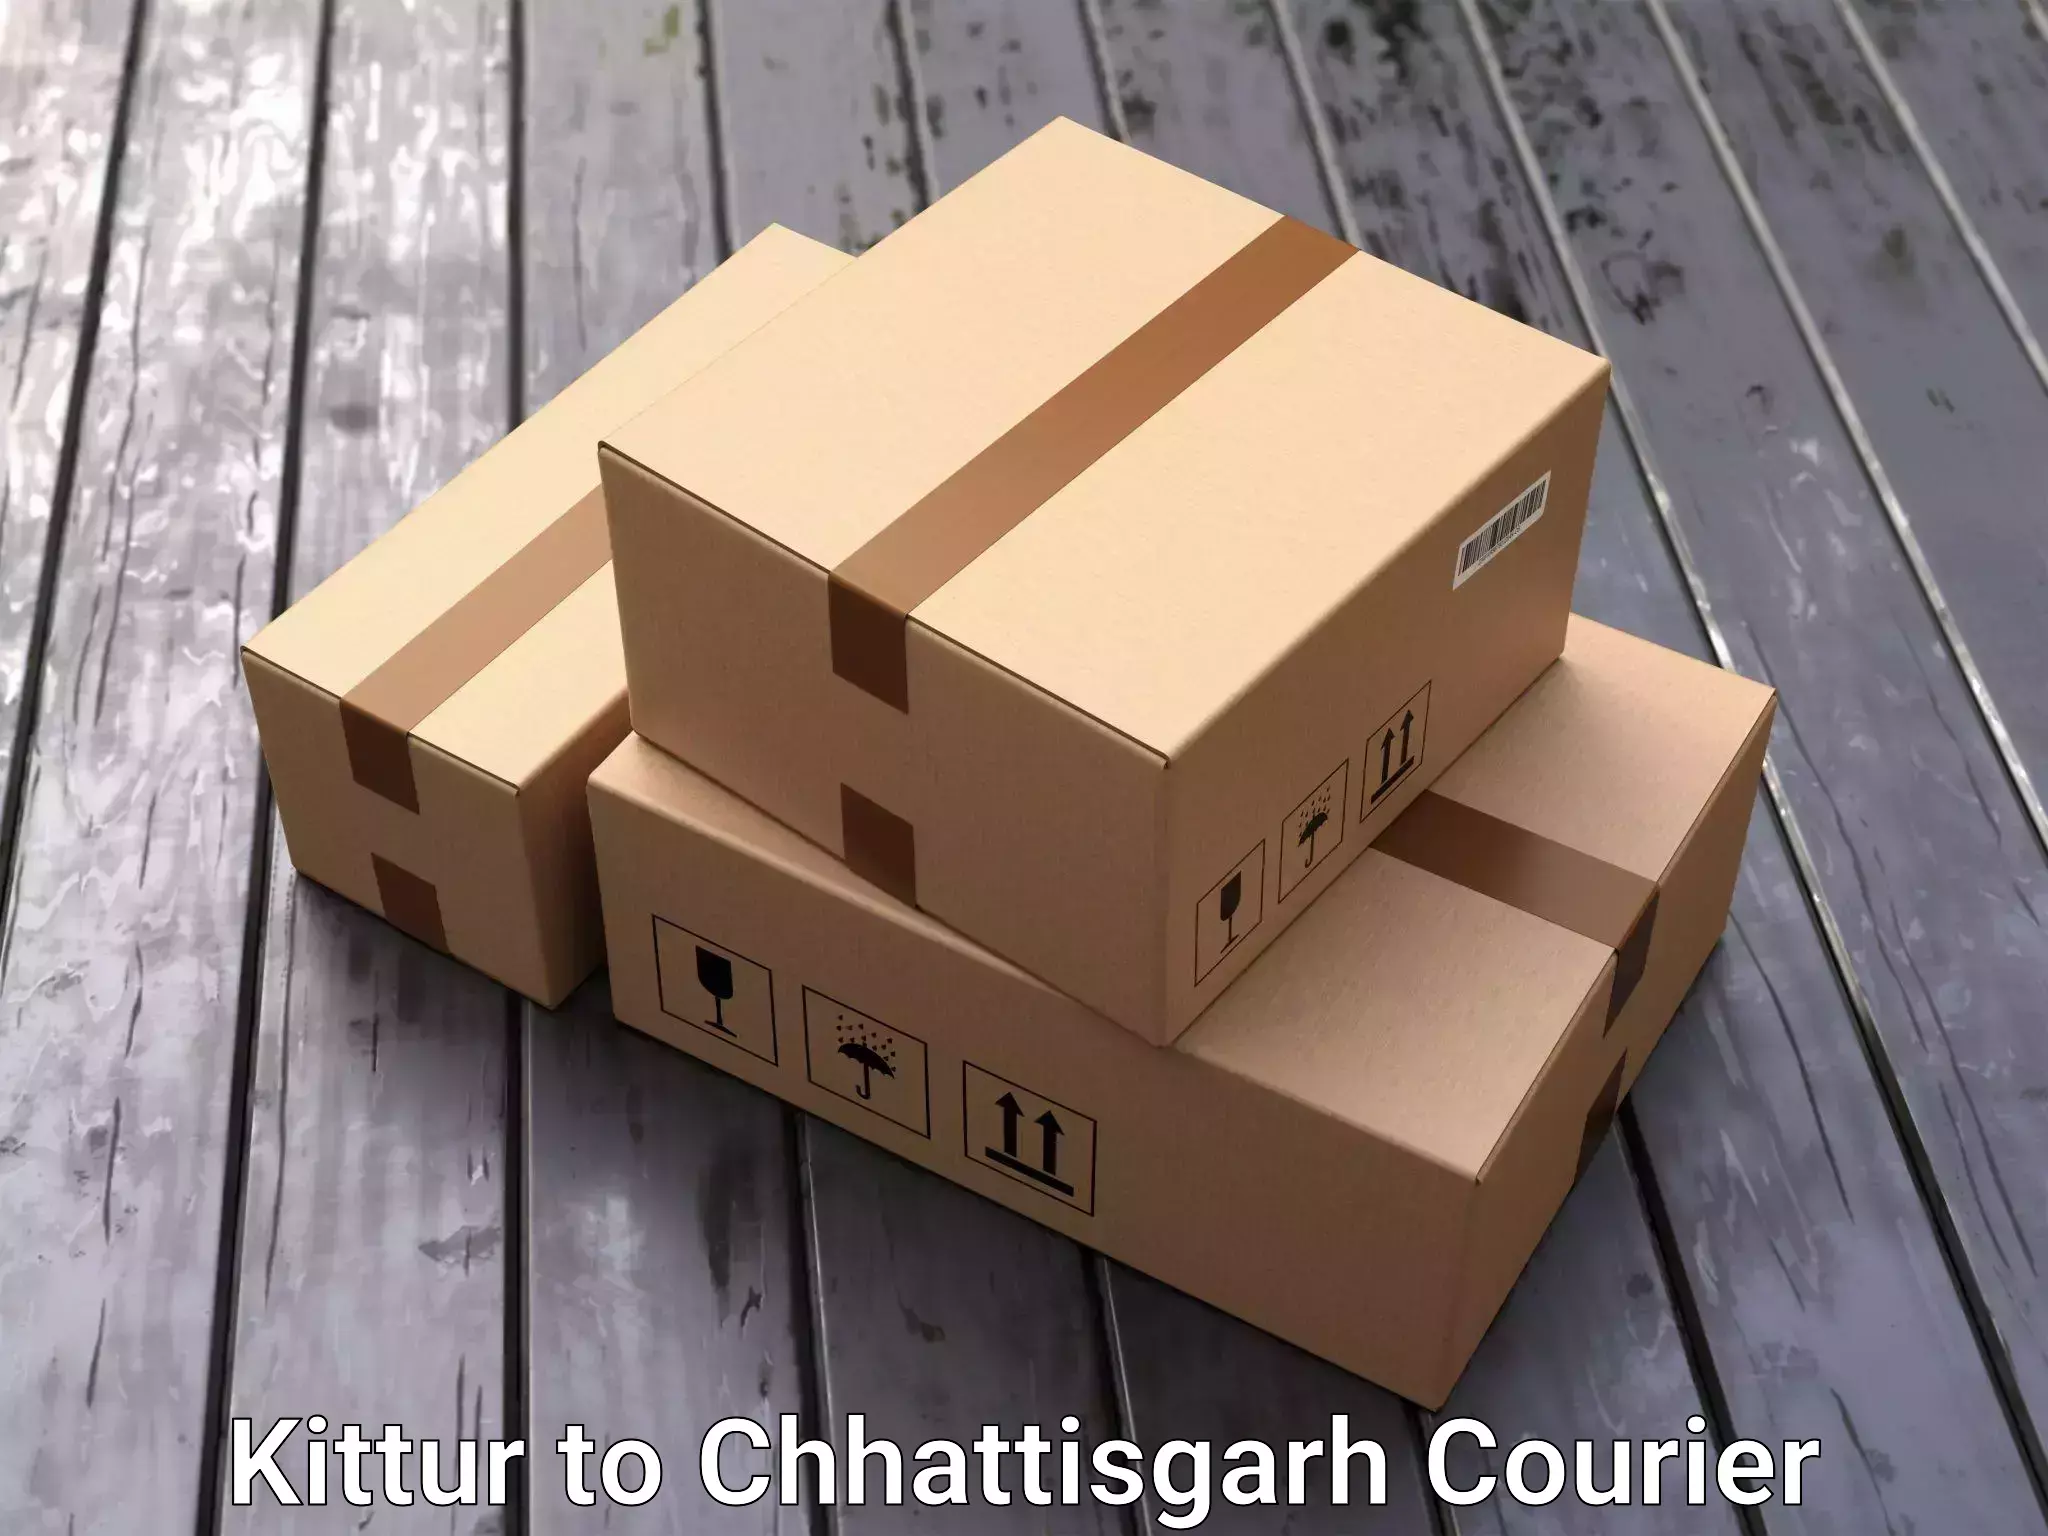 Quality household transport Kittur to Patna Chhattisgarh